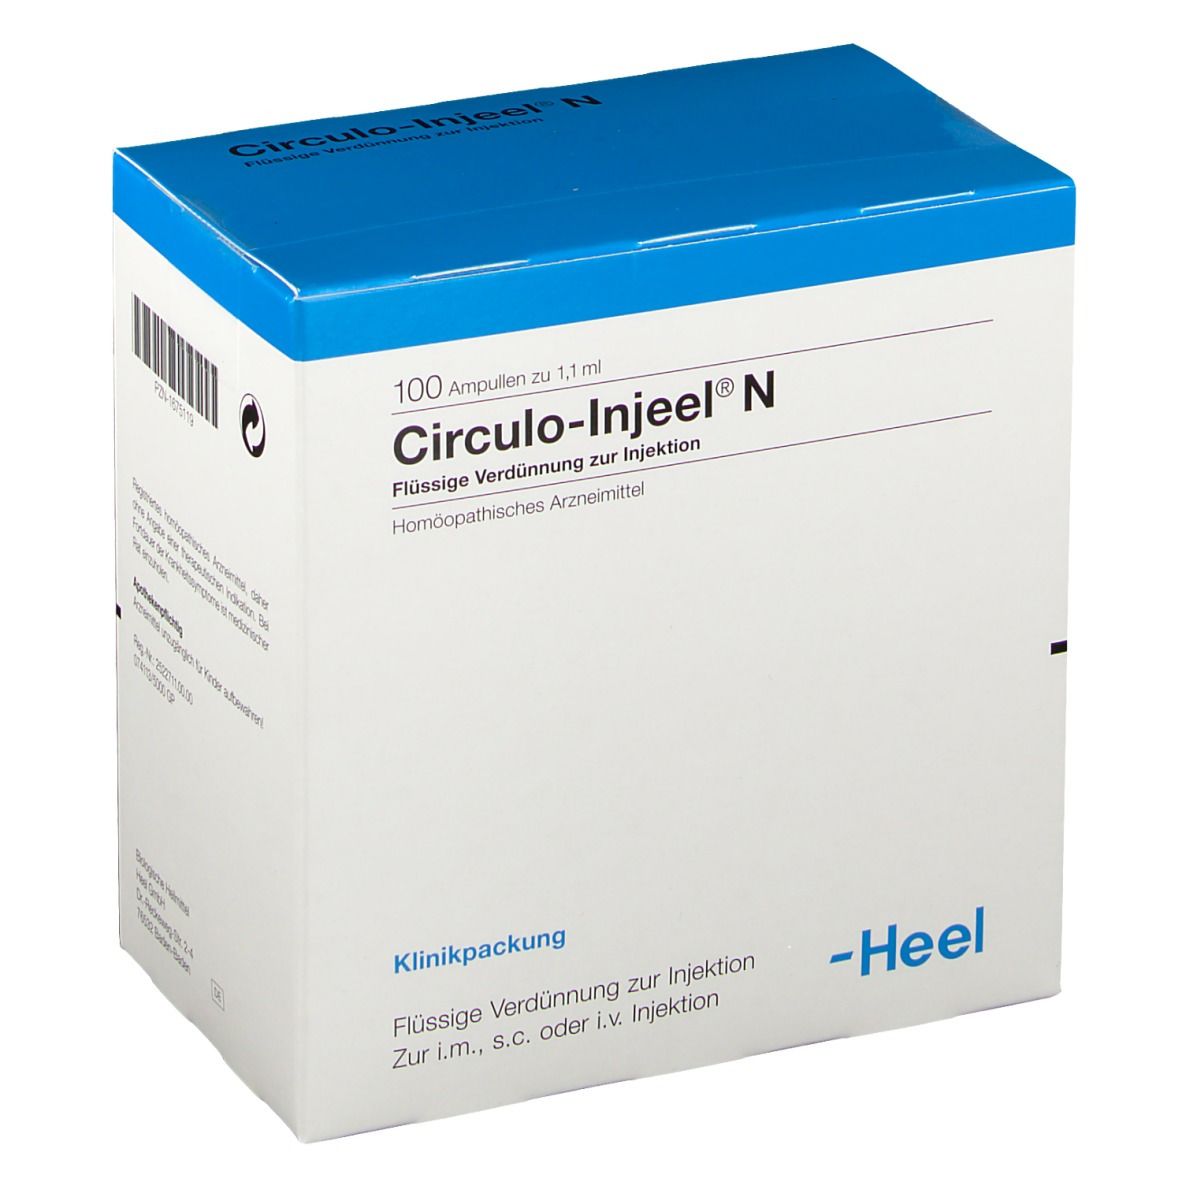 Circulo-Injeel® N